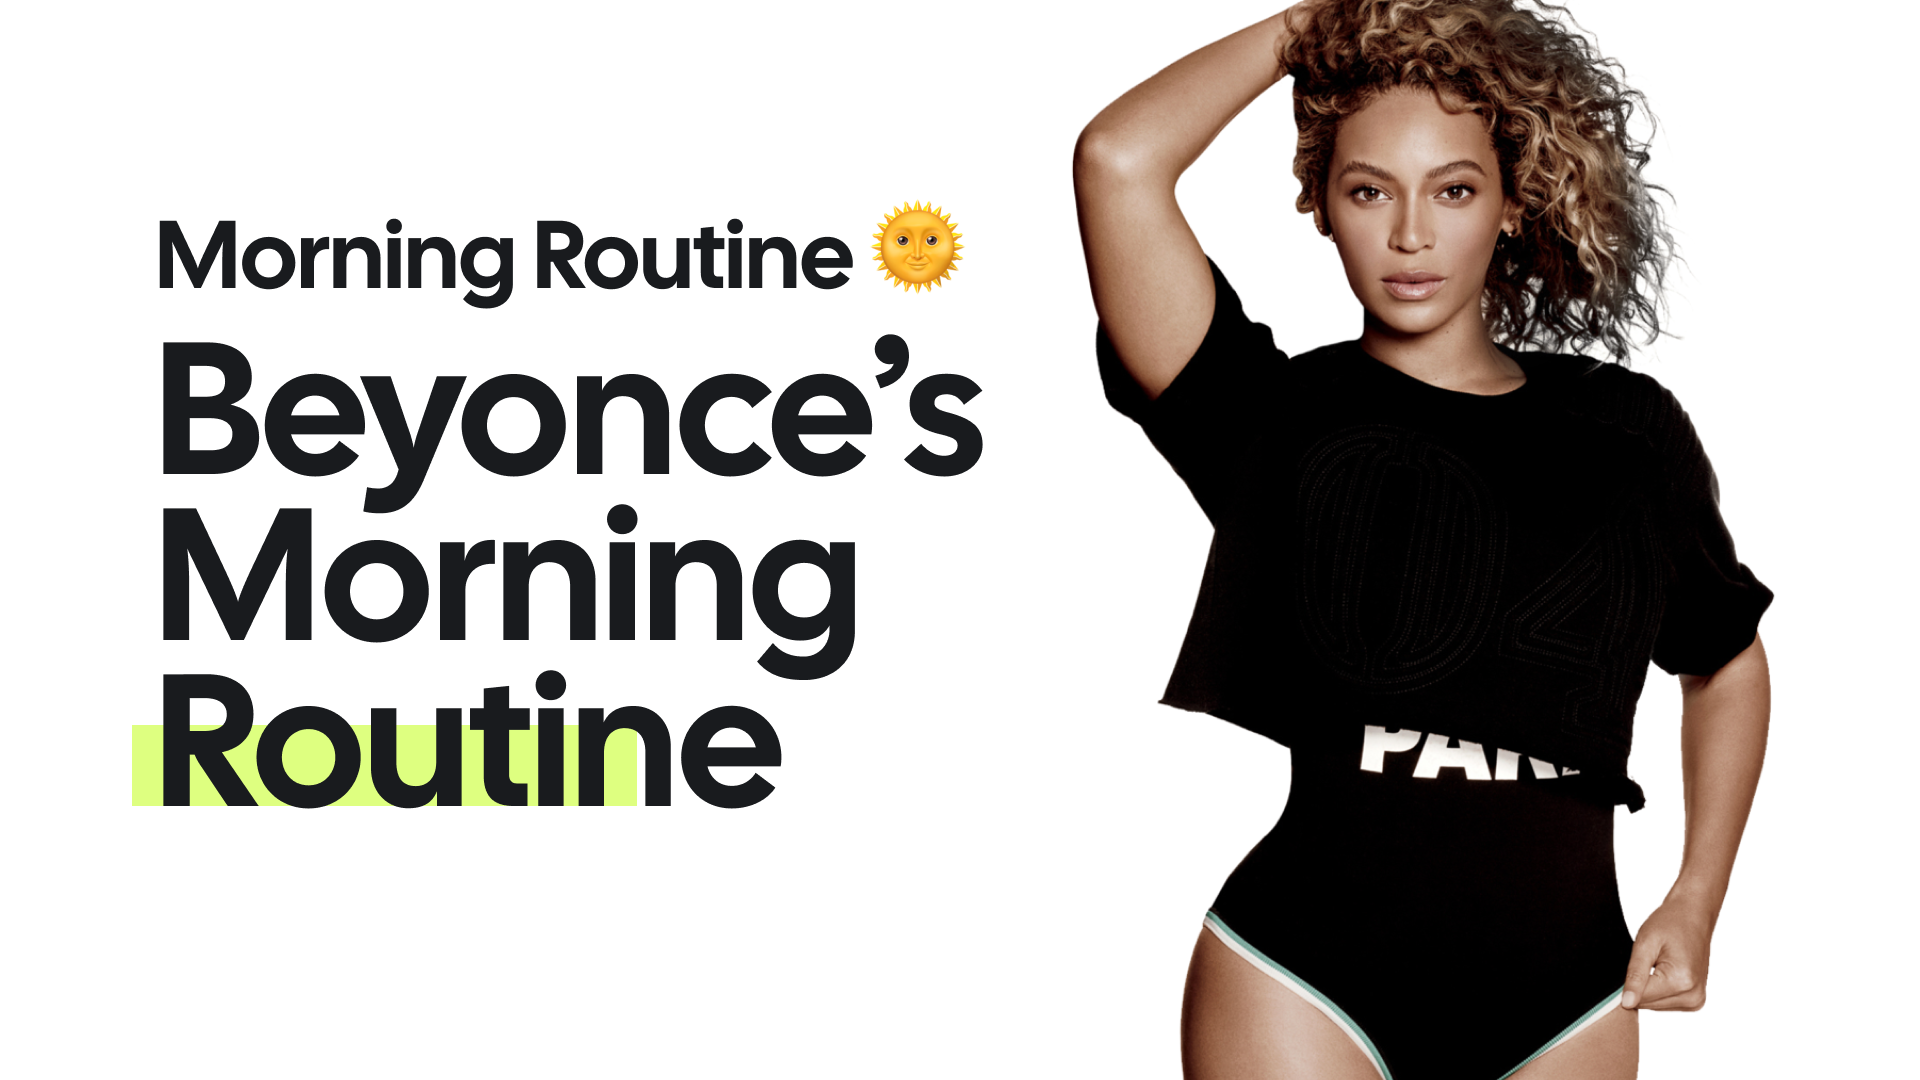 Beyonce's Tour Routine